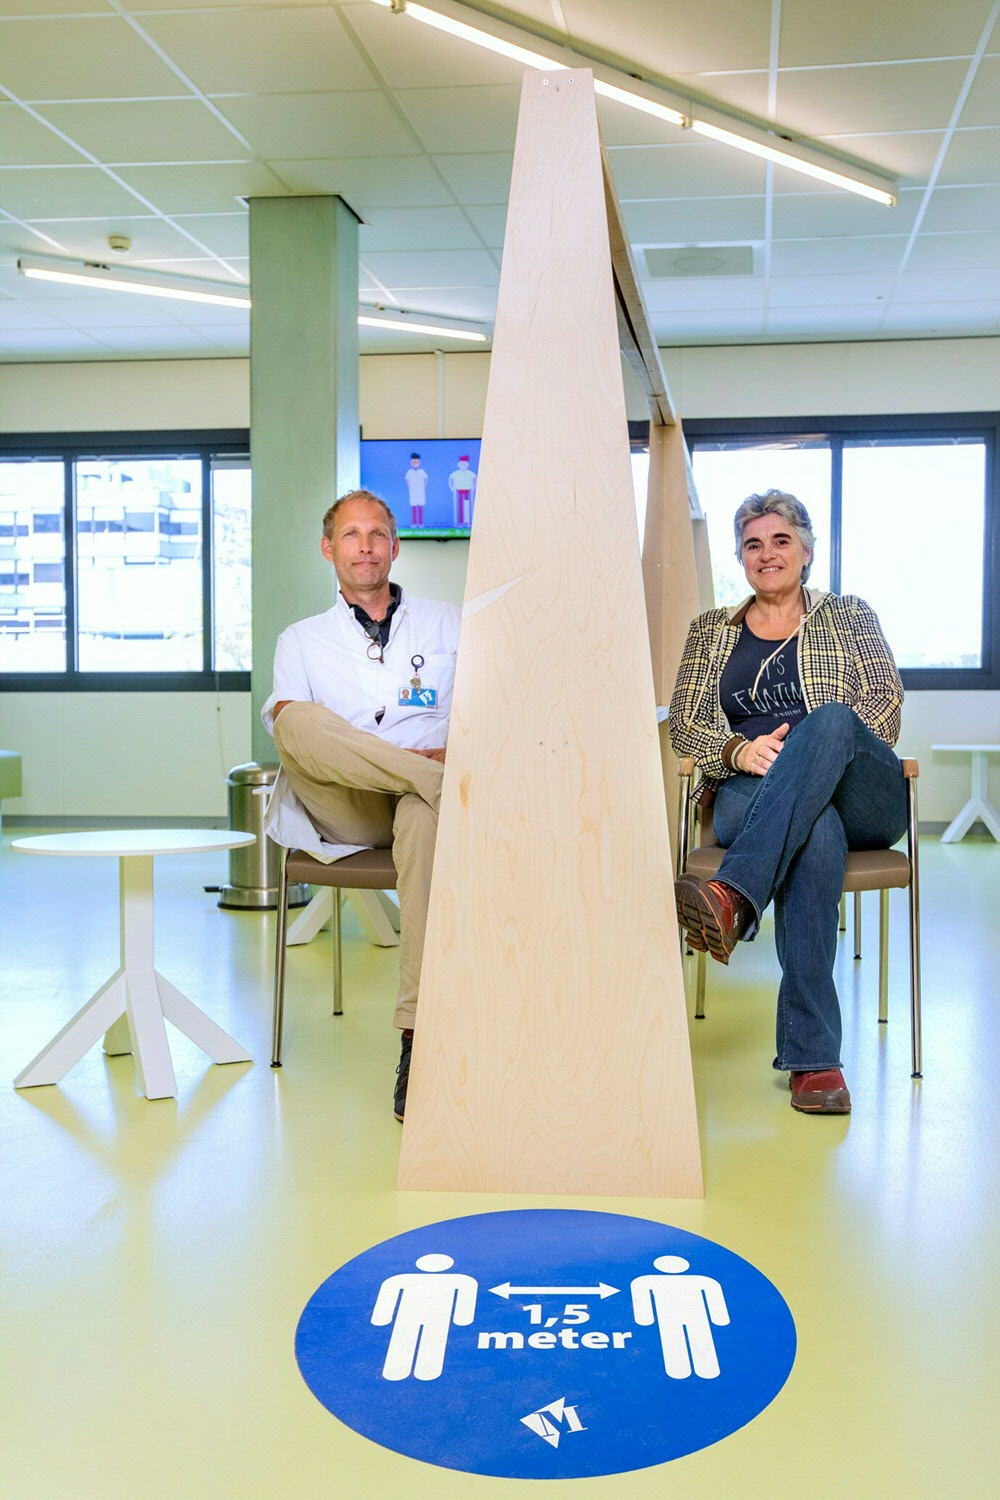 Gynecologist Marinus van der Ploeg and scheduler Marie-Jos Speelman sit down in the waiting room